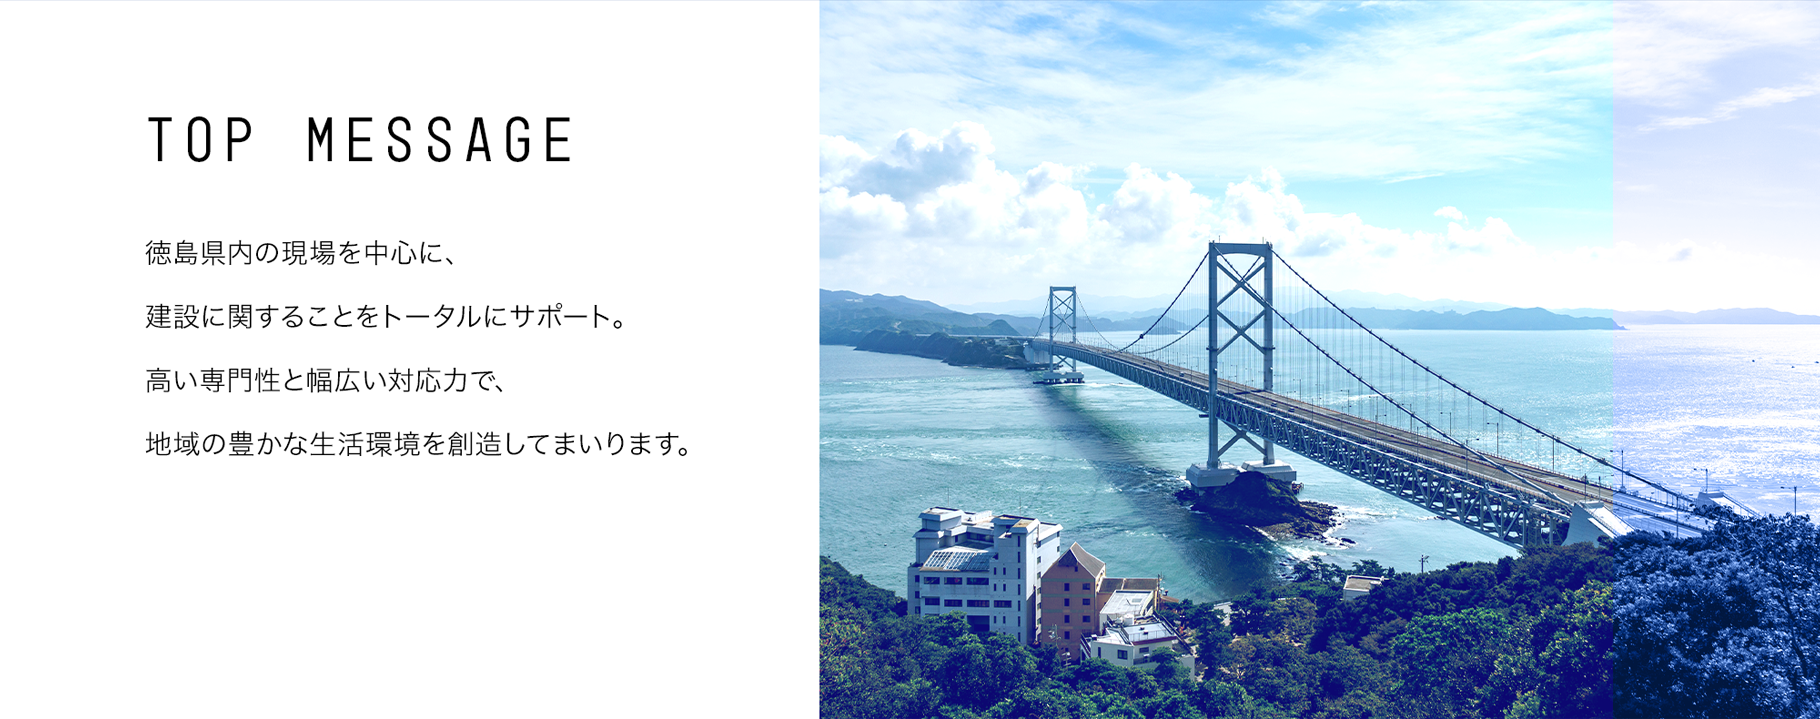 TOP MESSAGE 徳島県内の現場を中心に、建設に関することをトータルにサポート。高い専門性と幅広い対応力で、地域の豊かな生活環境を創造してまいります。